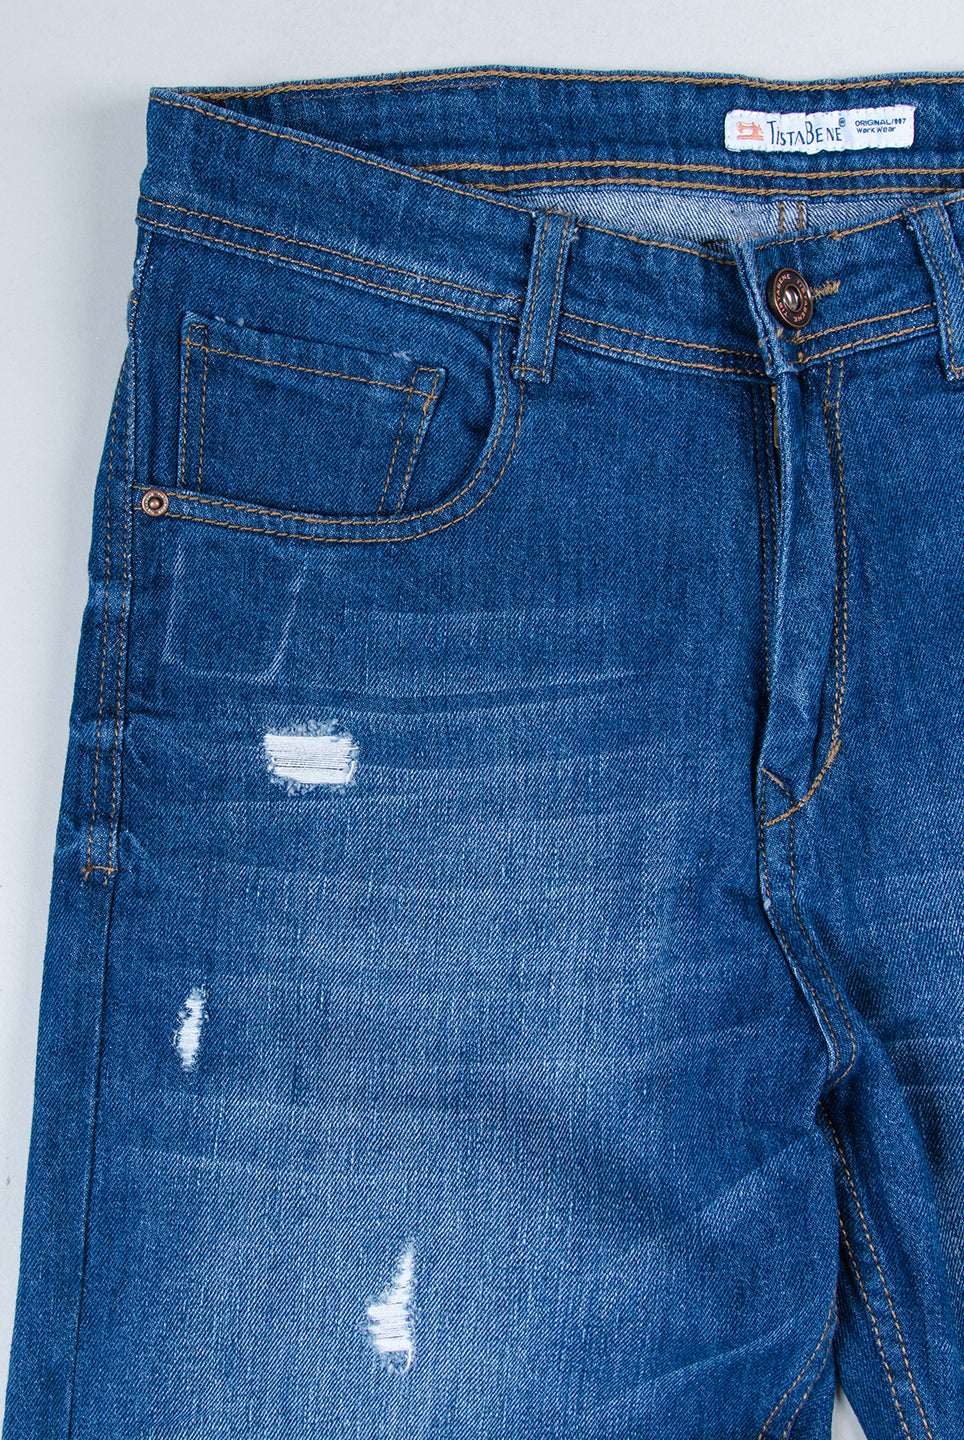 cotton denim jeans